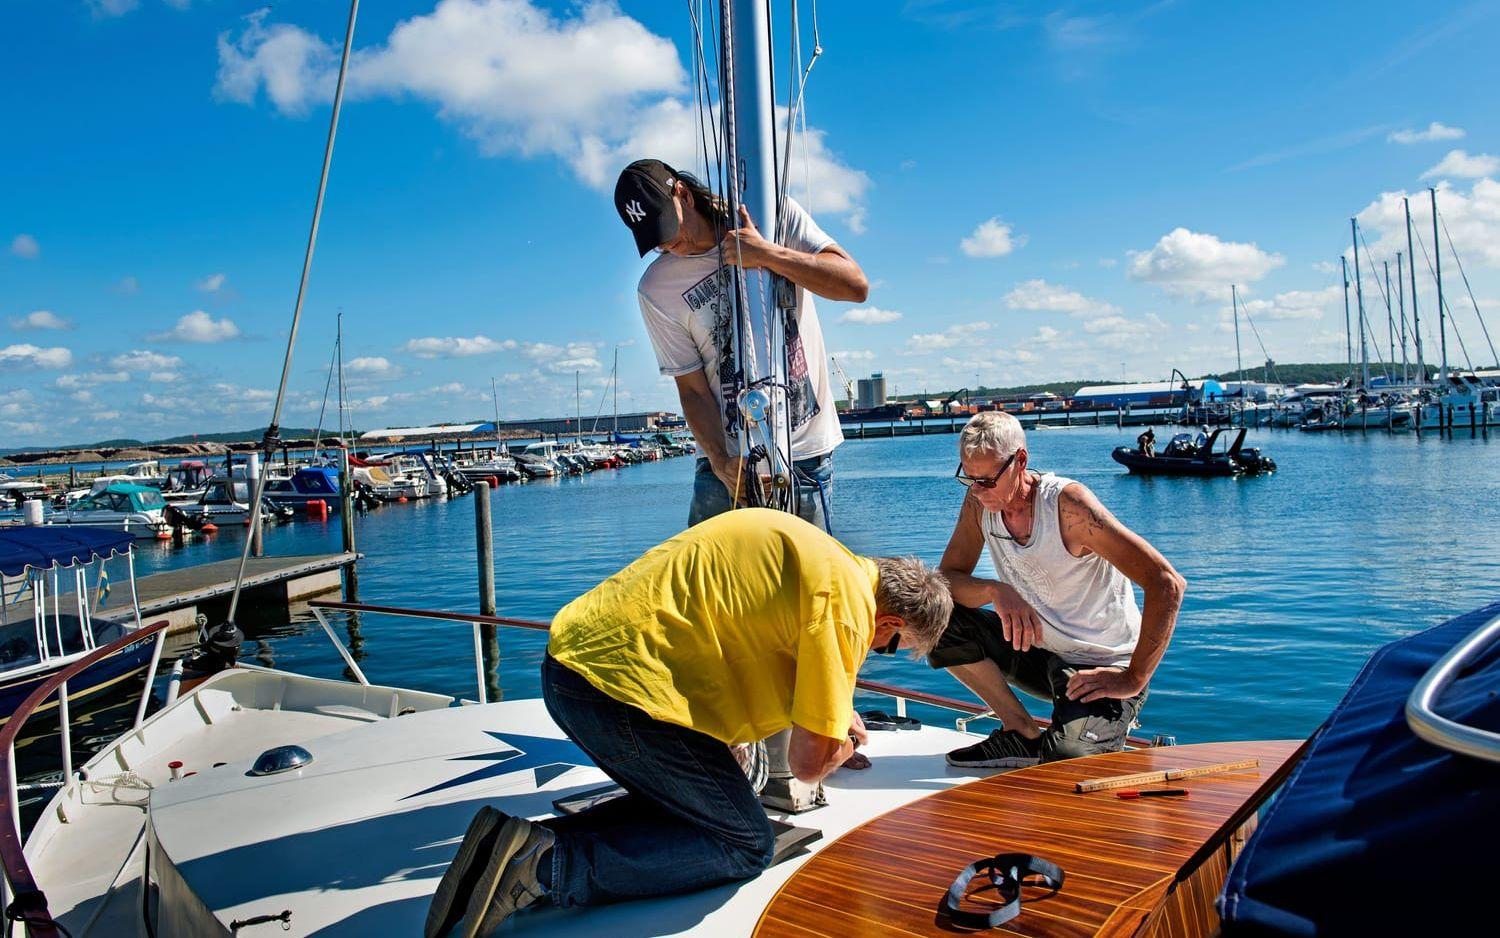 Mastigt. I nio år har Göran Söderberg från Borås, till vänster, renoverat sin båt. Nu får han hjälp av Thomas Grankvist, stående, och Erik Routsi, i gult, att masta på sitt renoveringsprojekt för första gången. Foto: Aline Lessner